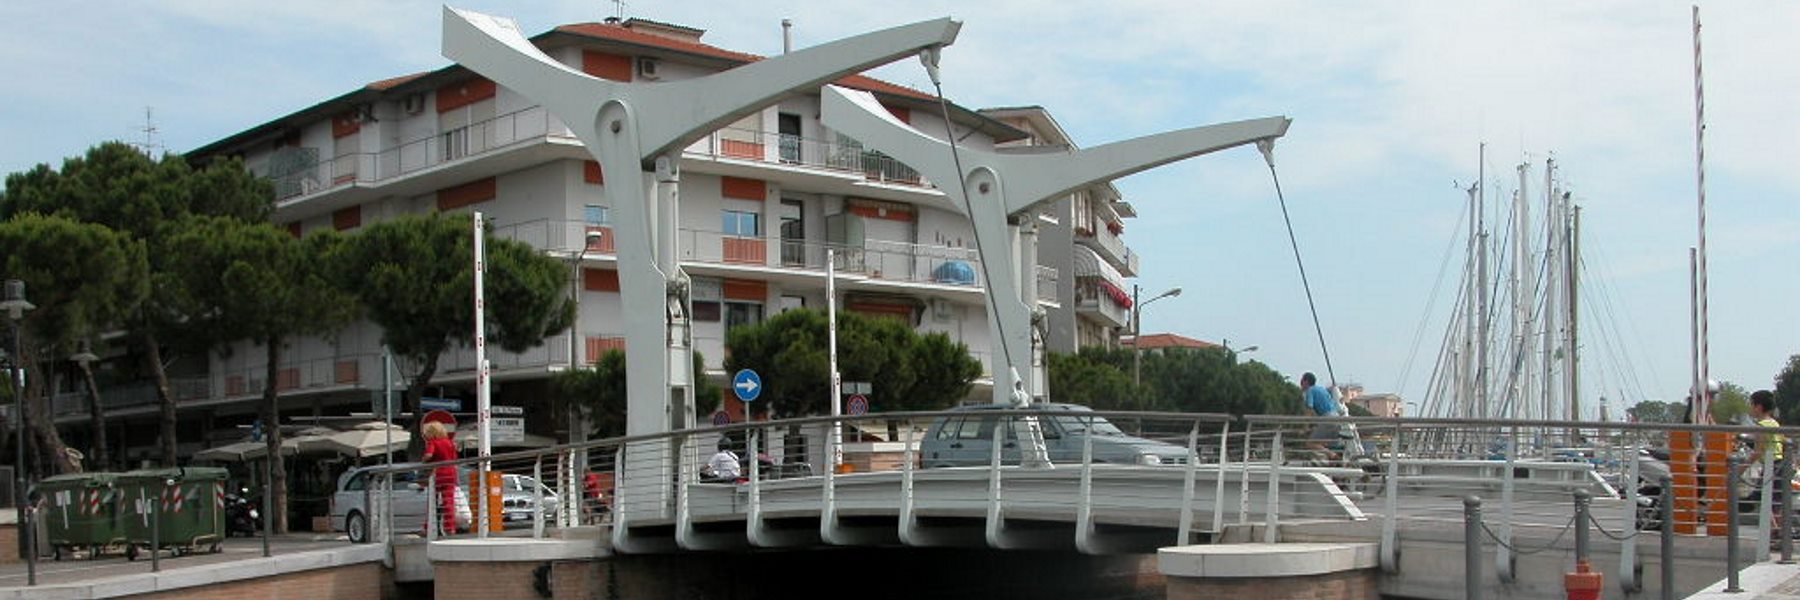 Die Brücke "Ponte delle Paratoie"